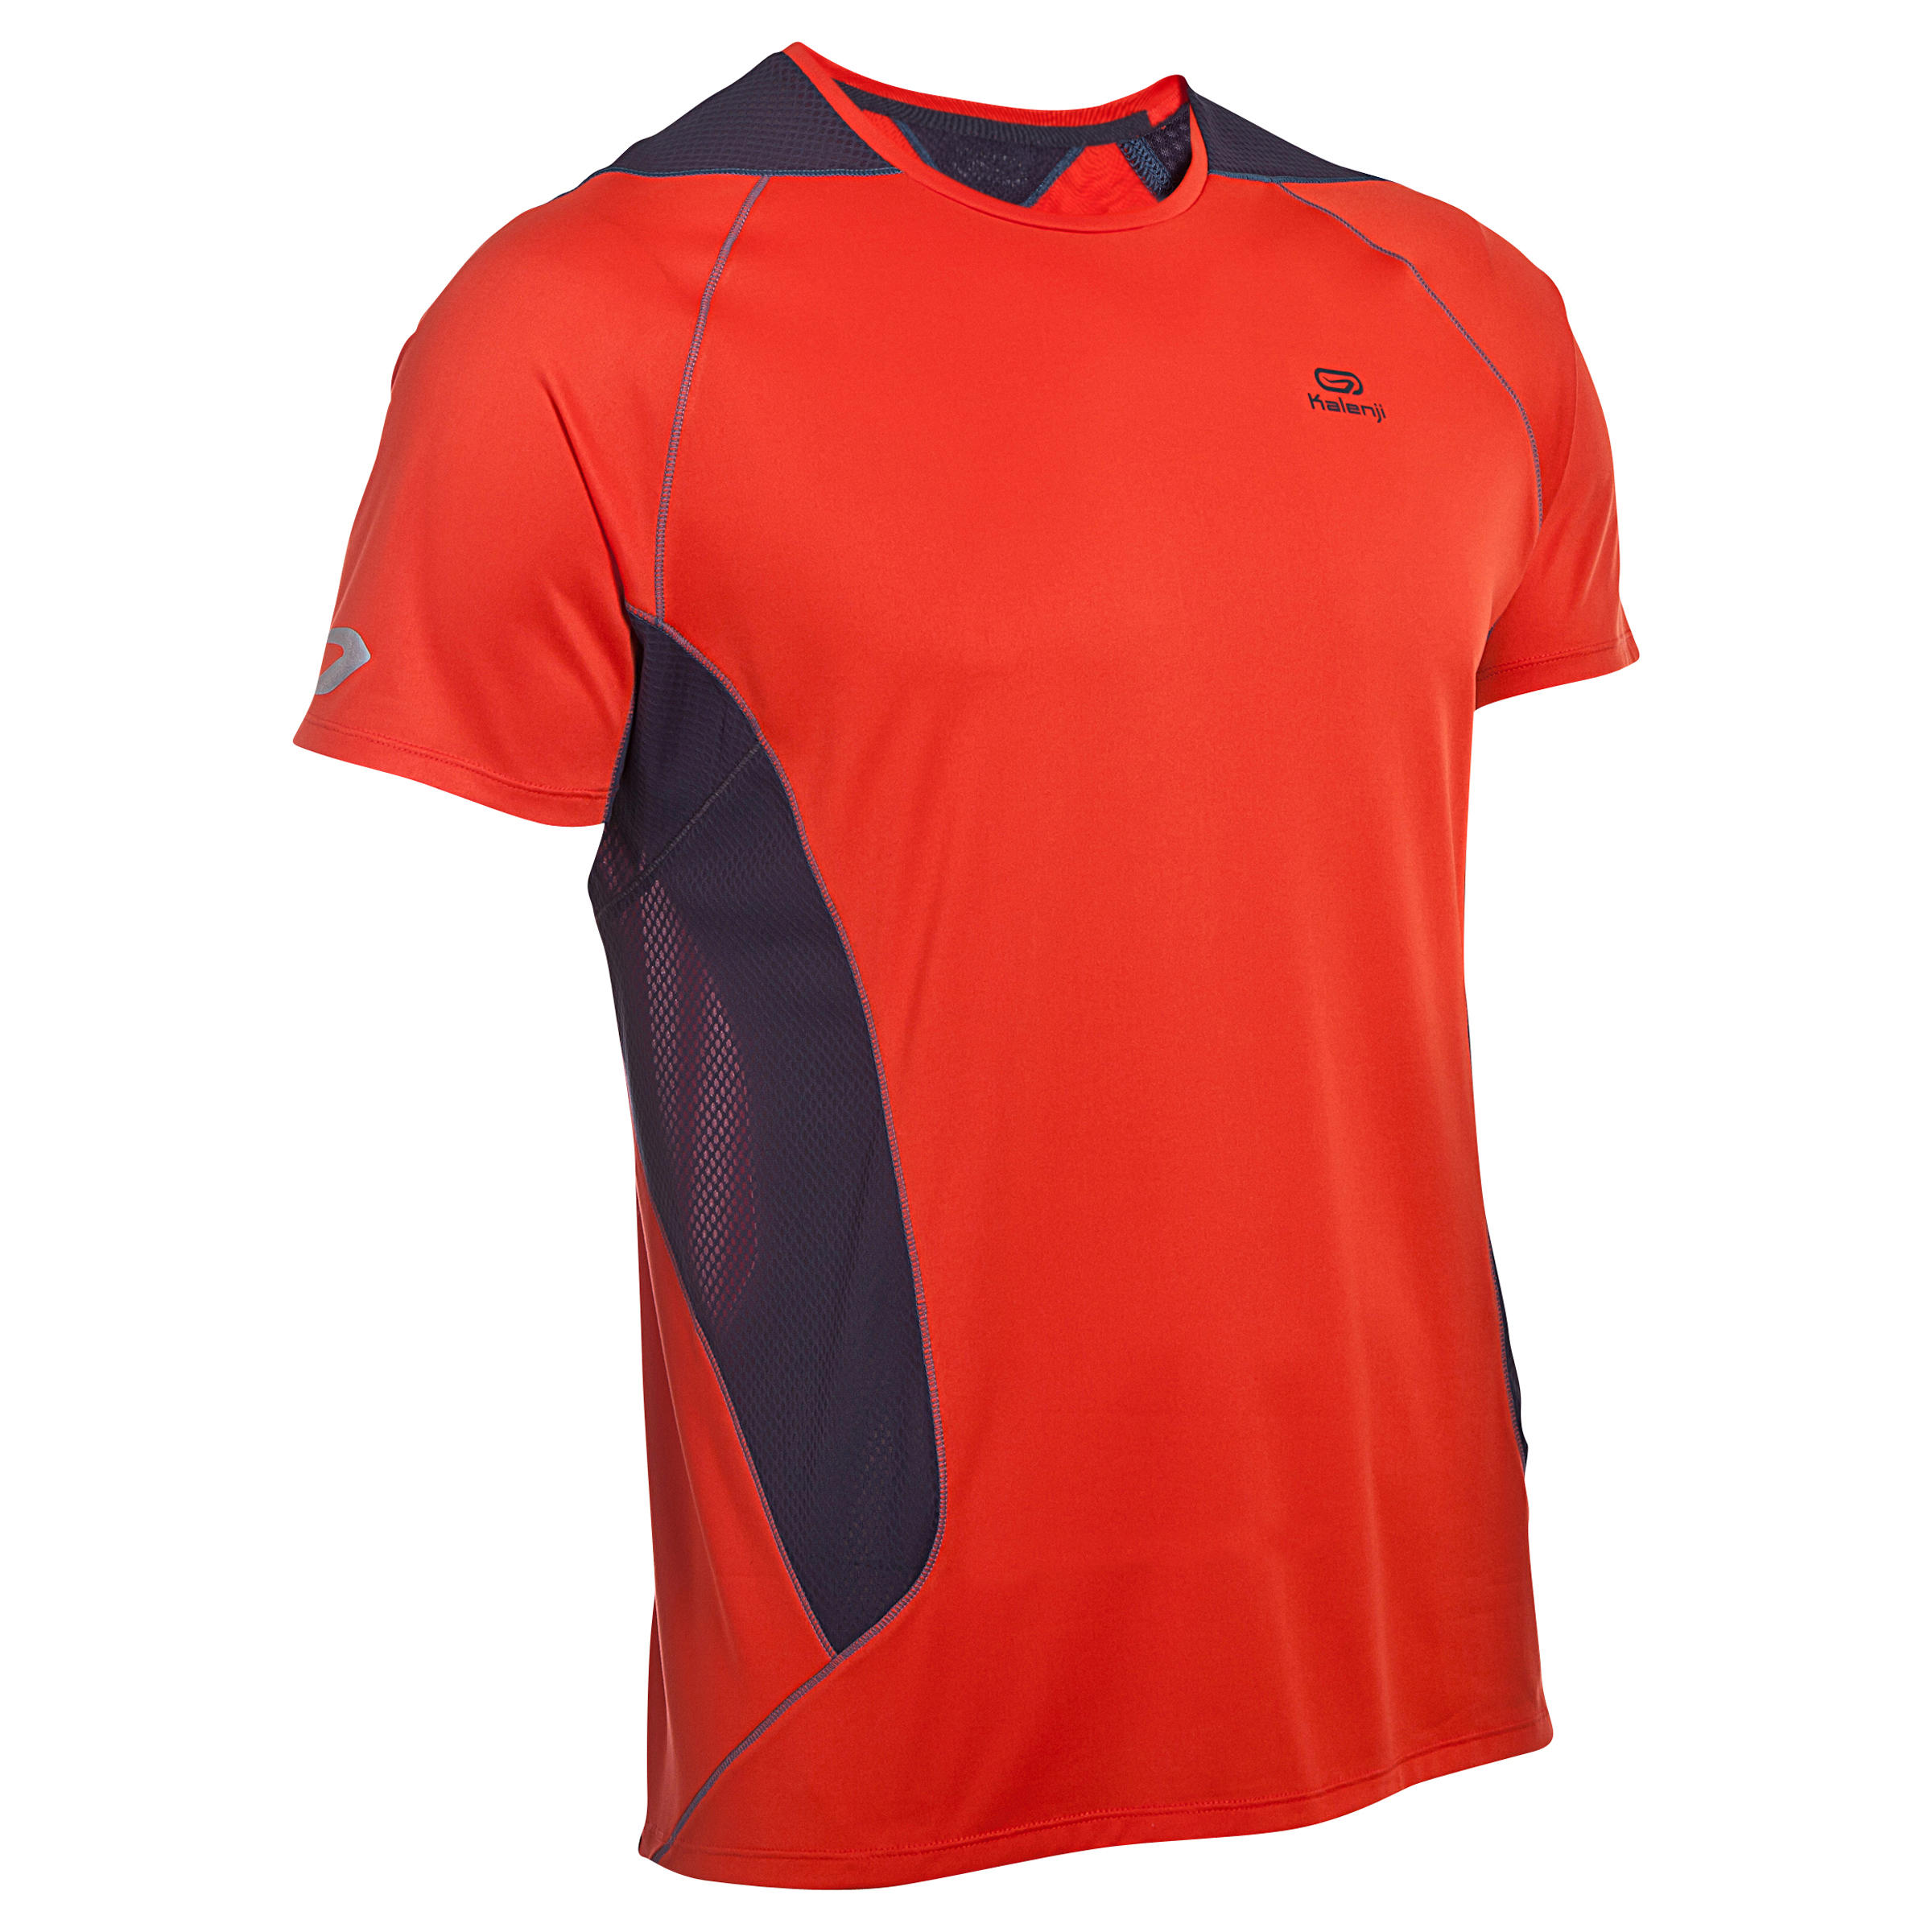 KALENJI Eliofeel Men's Running T-shirt - orange grey